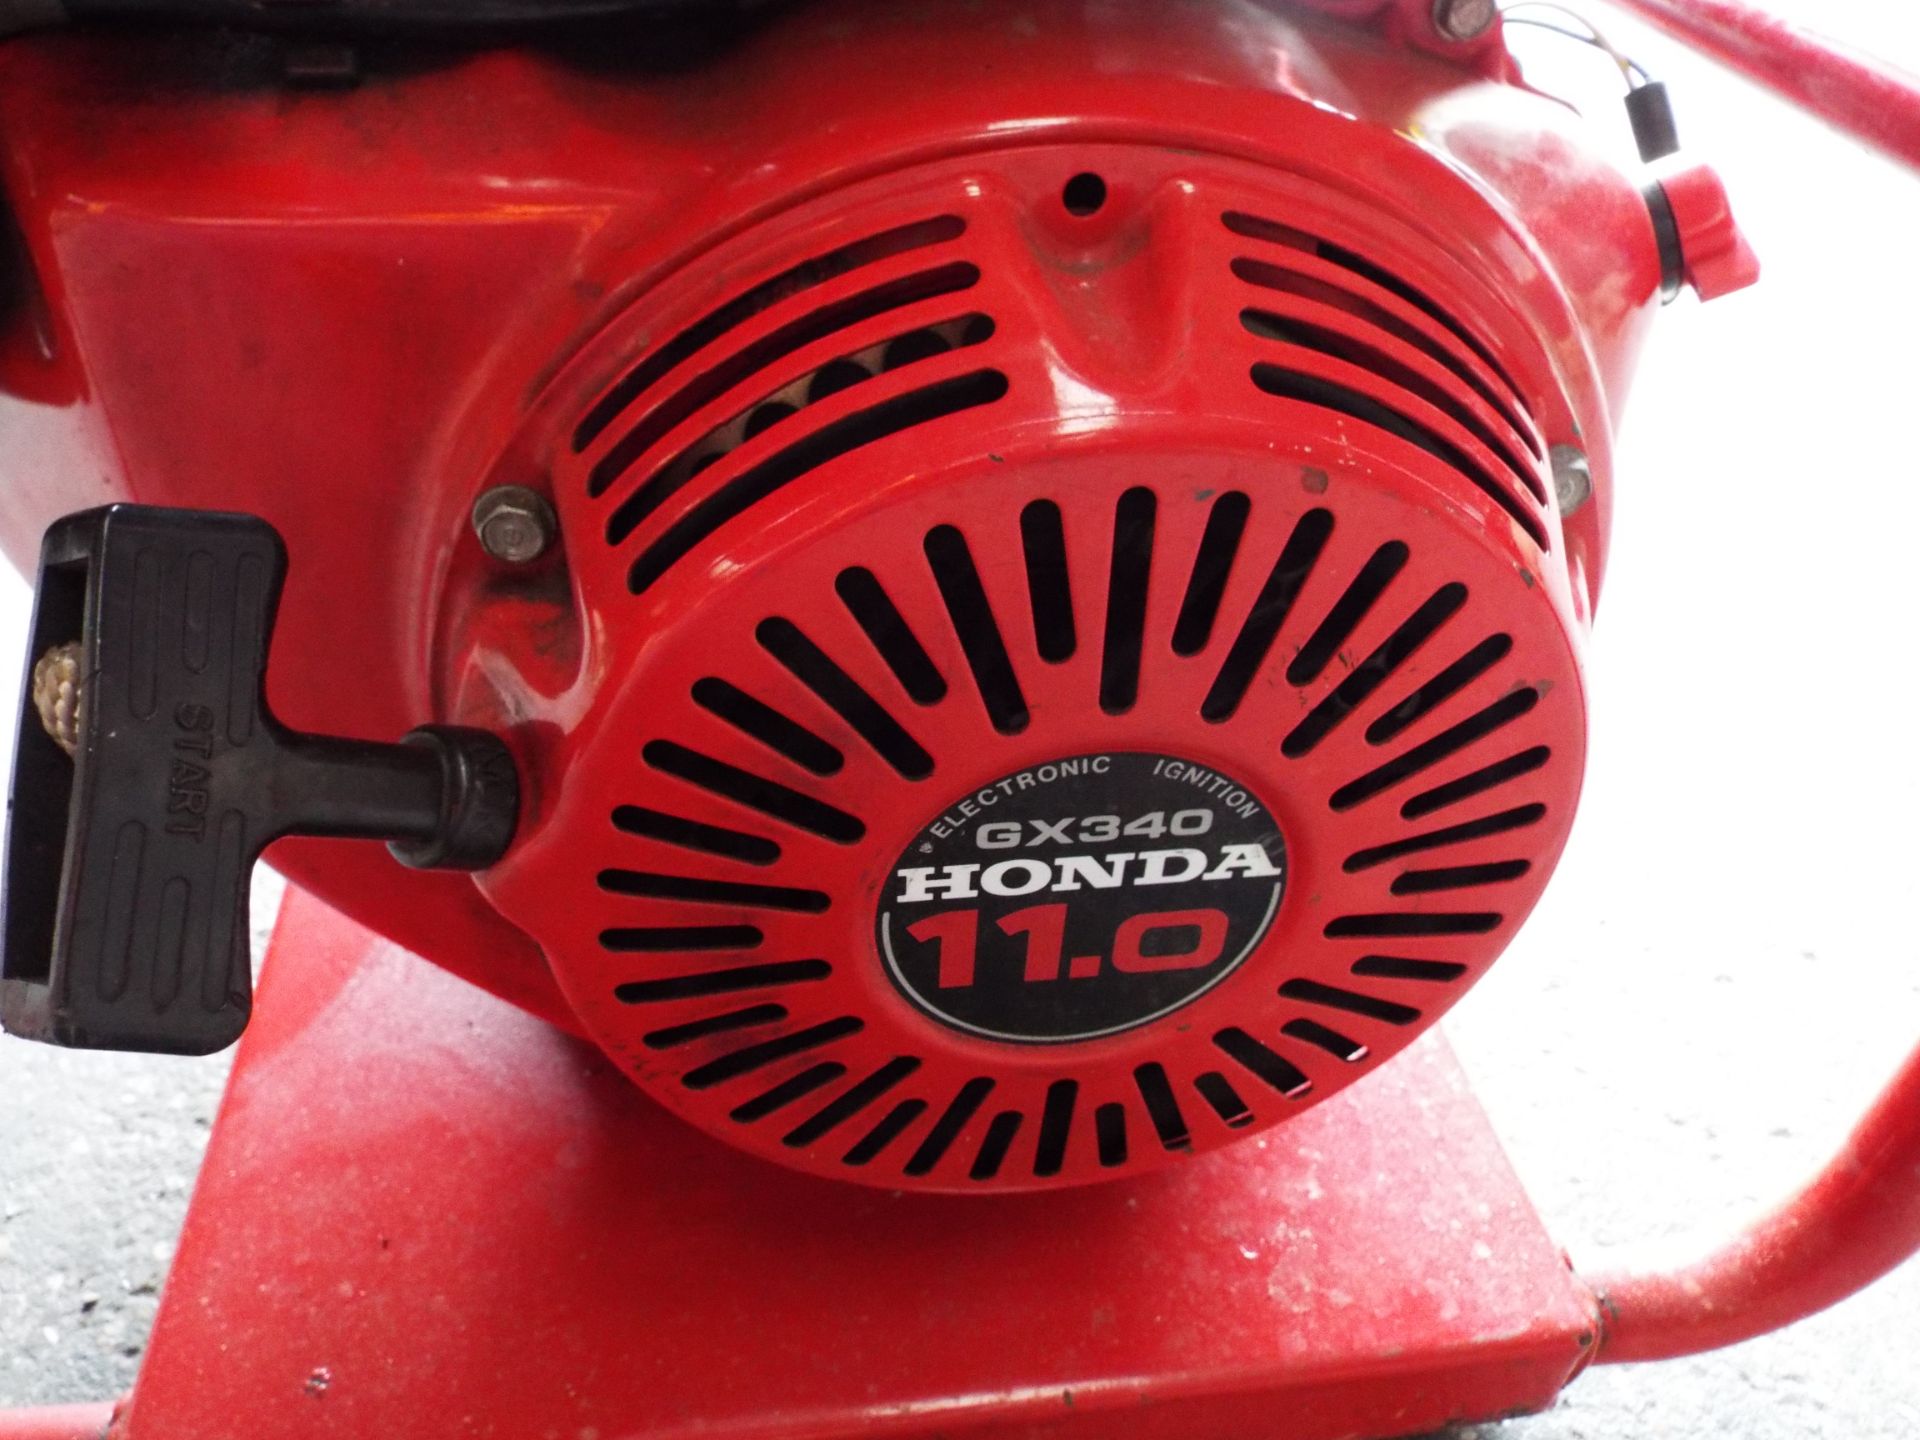 Honda GX340 Powered Petrol Generator - Bild 9 aus 9